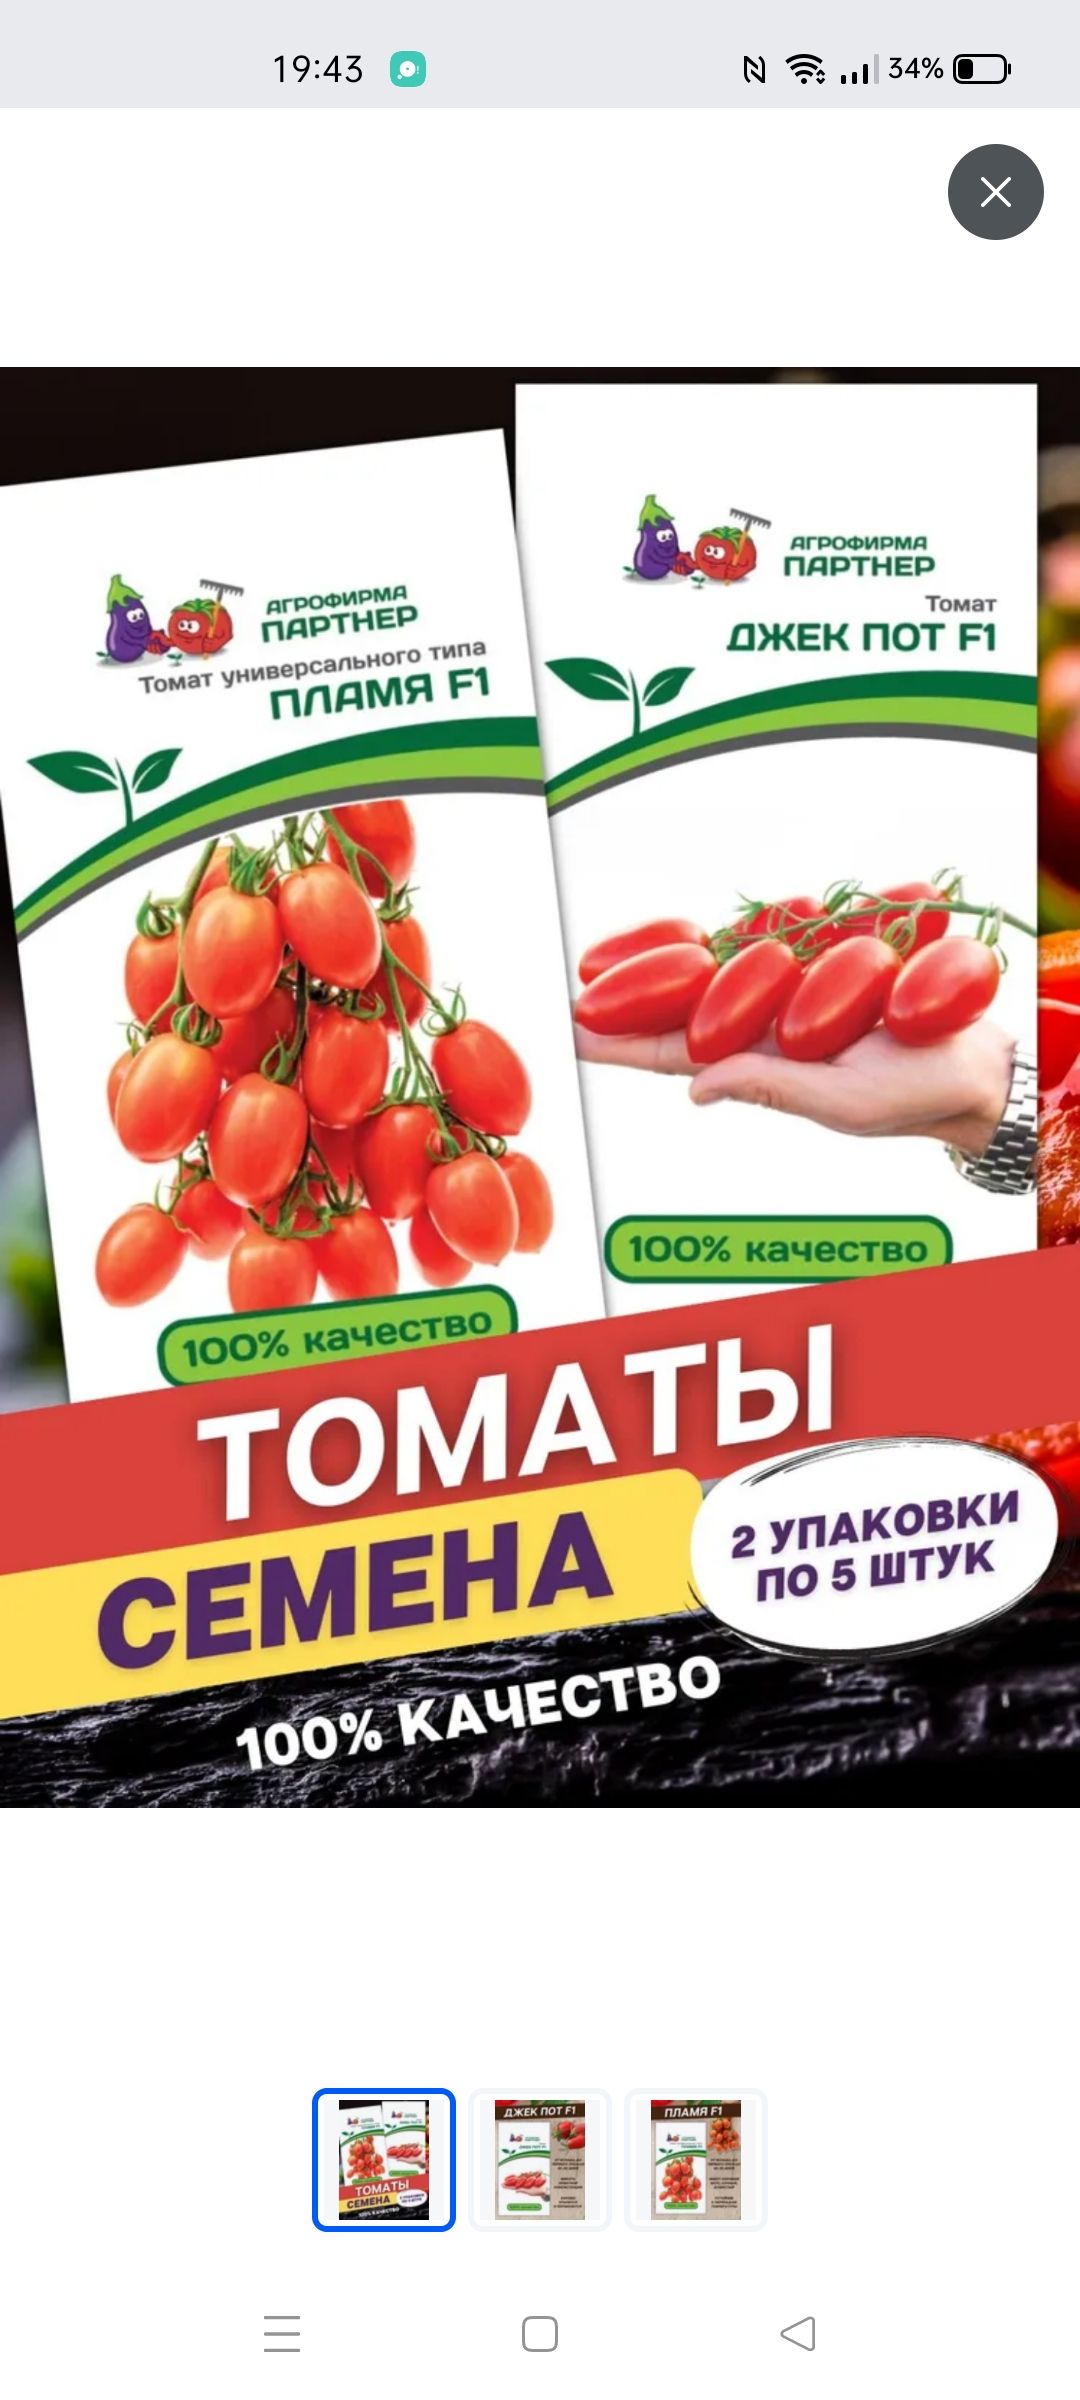 Томат джекпот купить. Пламя Агрофирма партнер томат. Семена томат пламя f1. Семена томат Джек пот f1. Семена томата партнер пламя.